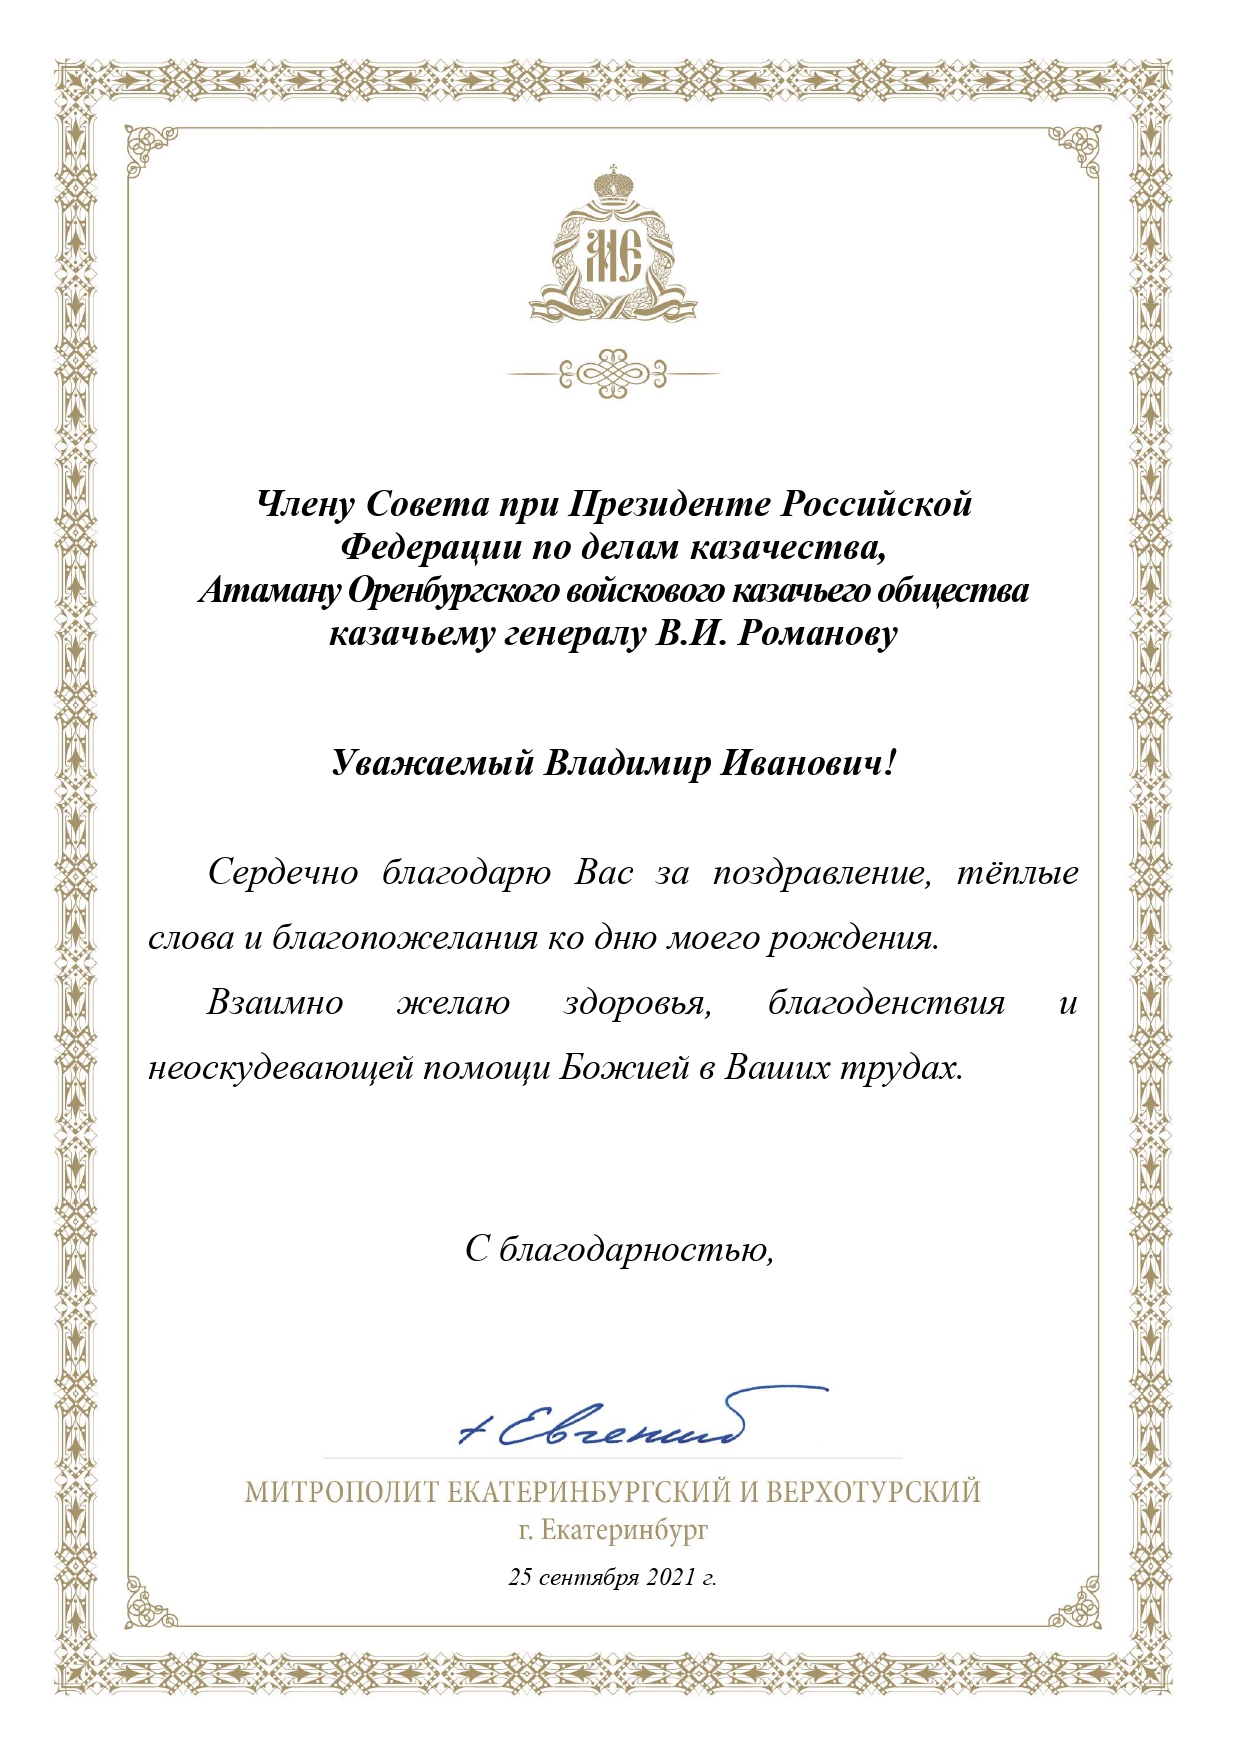 Атаман и казаки ОКВ поздравили с днем рождения митрополита Екатеринбургского и Верхотурского Евгения